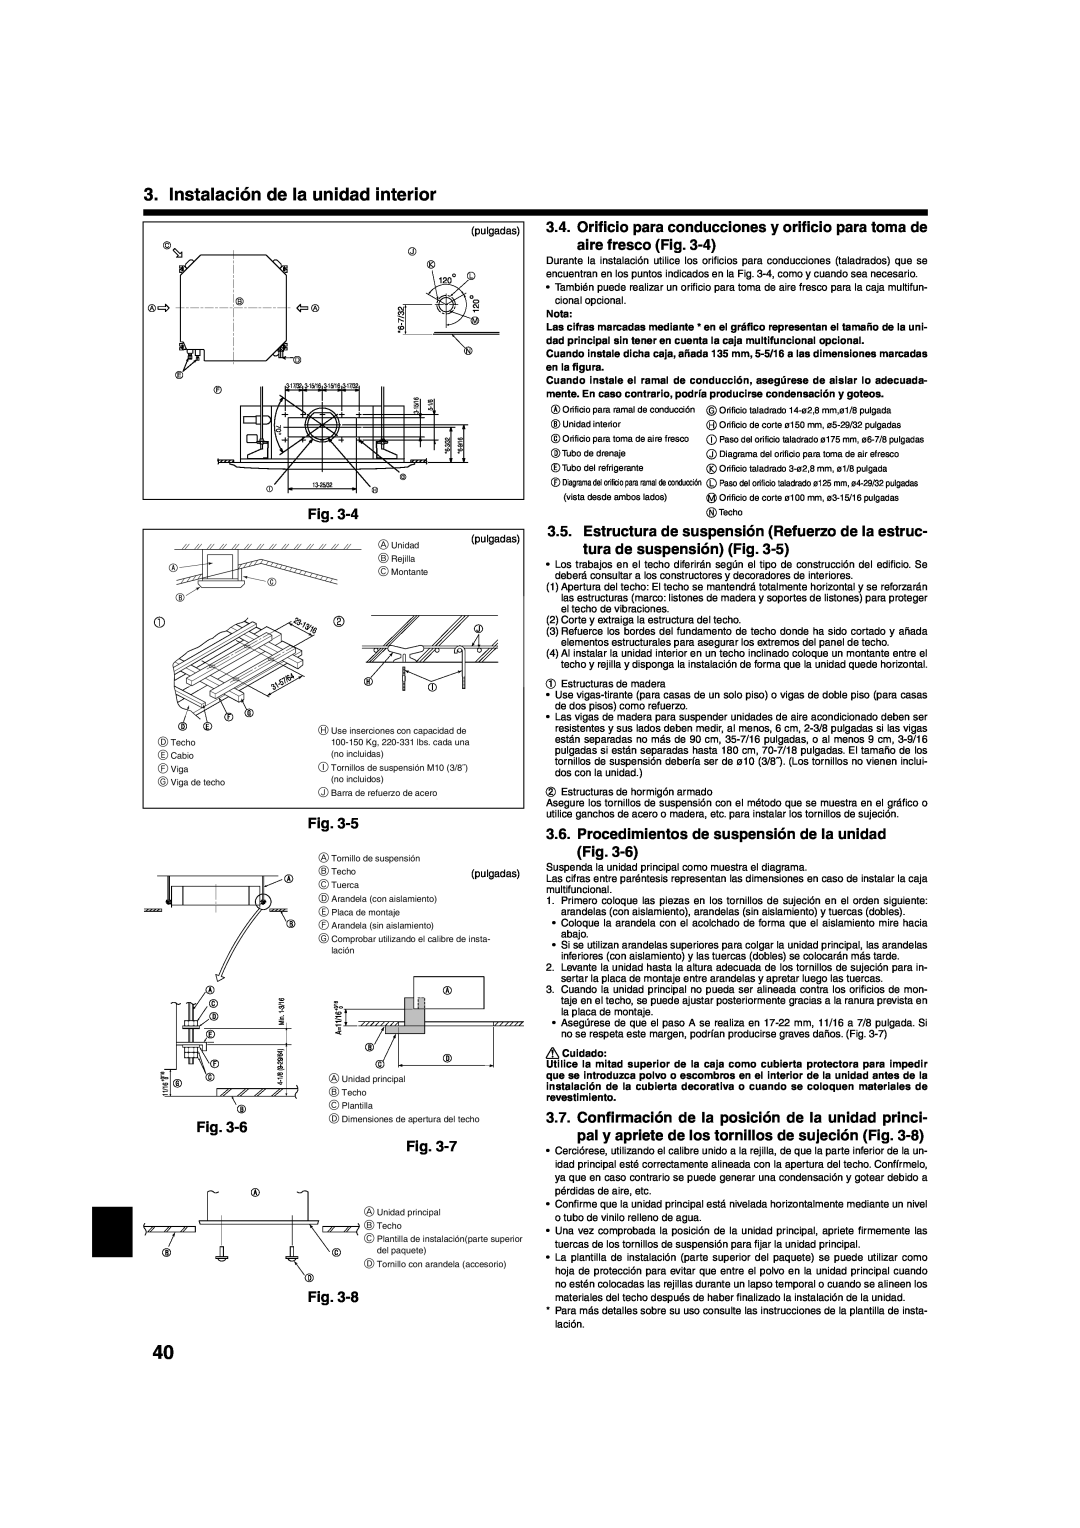 Mitsumi electronic PLA-ABA installation manual tura de suspensión Fig, Instalación de la unidad interior 